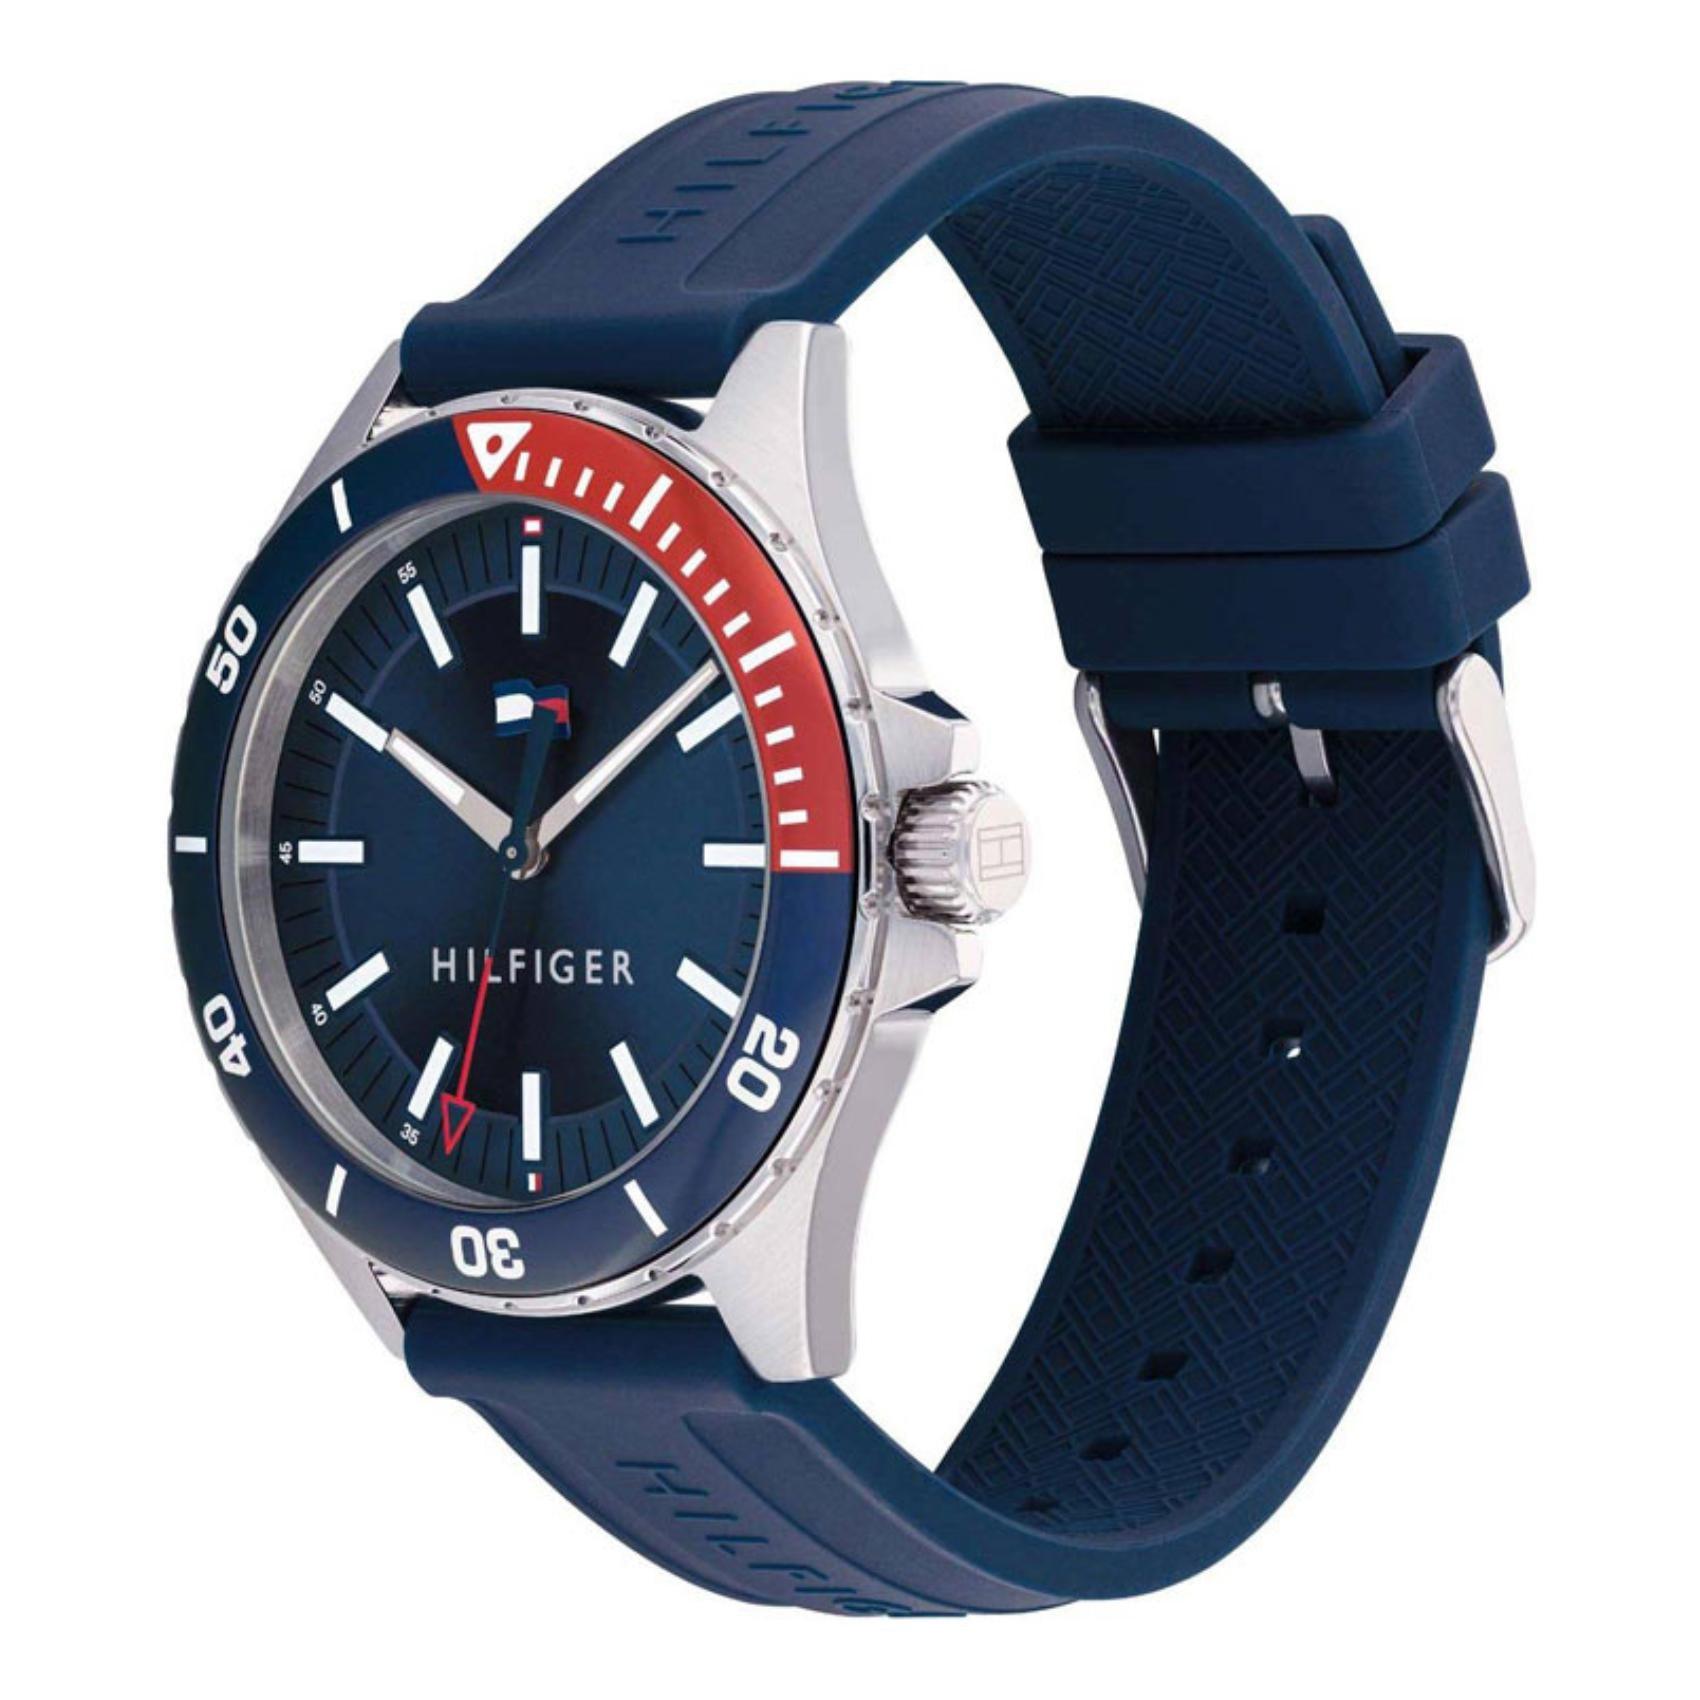 Ανδρικό ρολόι Tommy Hilfiger Logan 1792009 με μπλε καουτσούκ λουράκι και μπλε καντράν διαμέτρου 43mm.